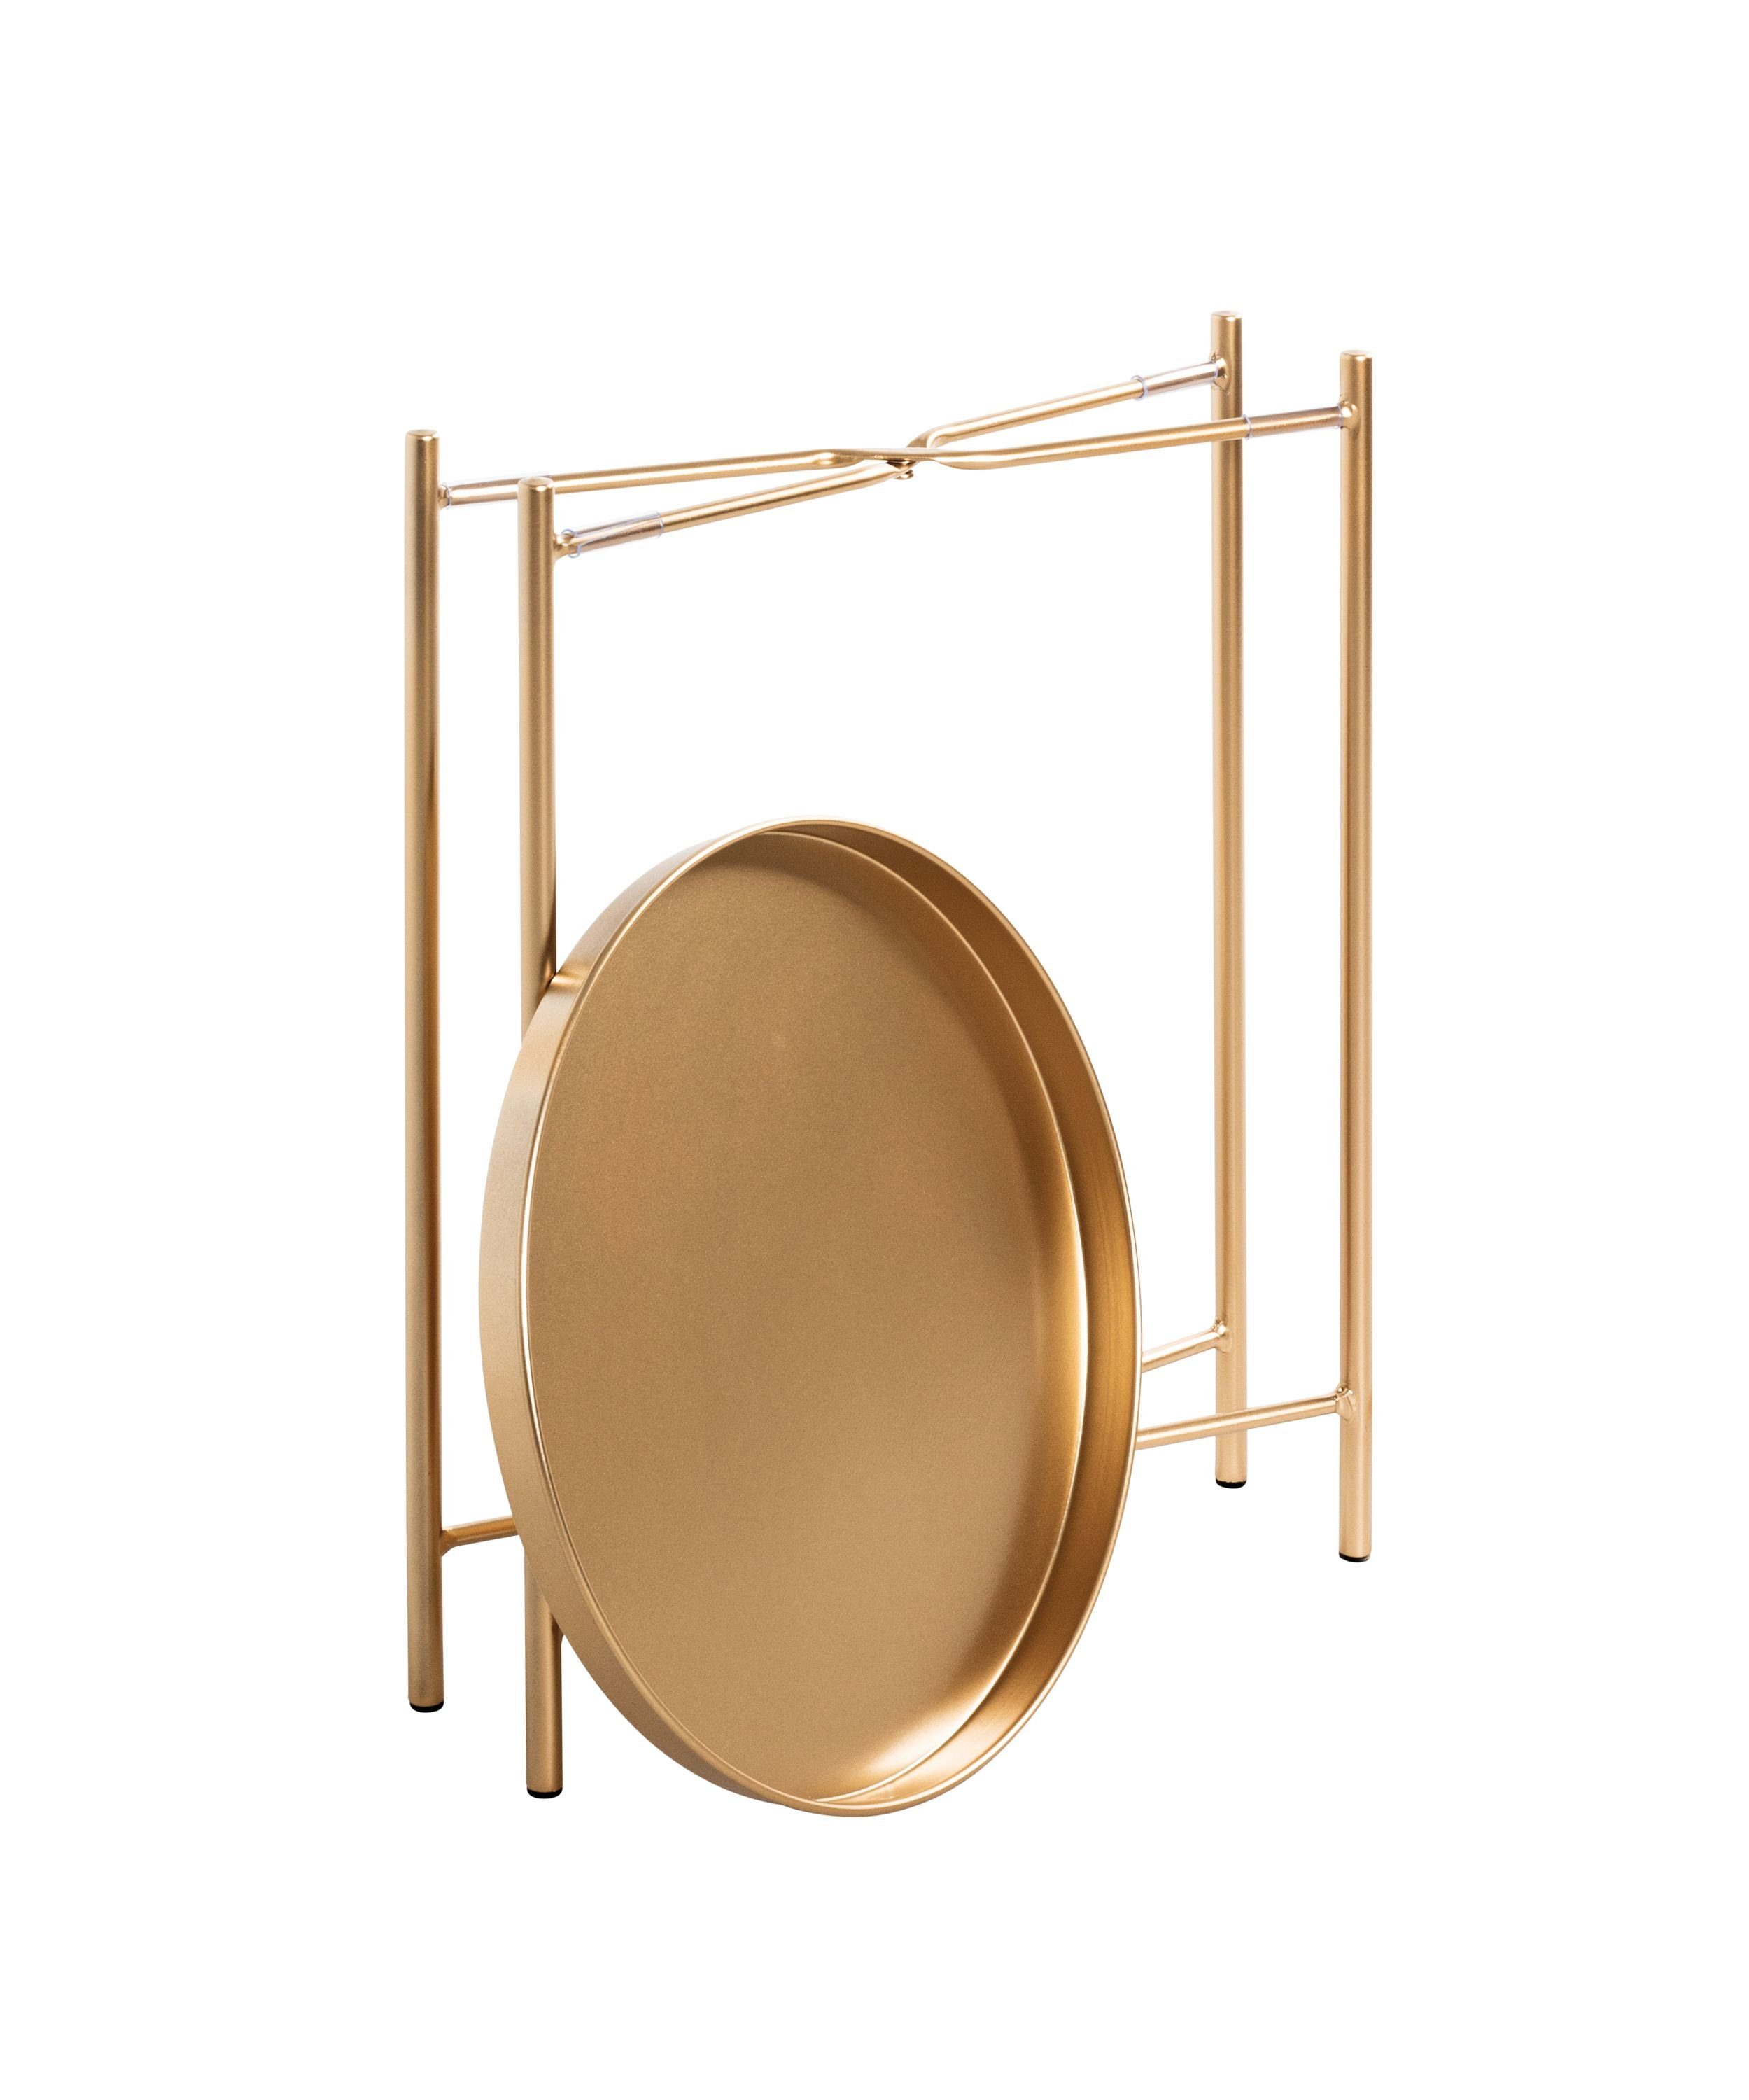 HAKU Beistelltisch 39x50 39x50 (DH DH cm) HAKU gold Kaffeetisch Möbel Beistelltisch cm Beistelltisch,